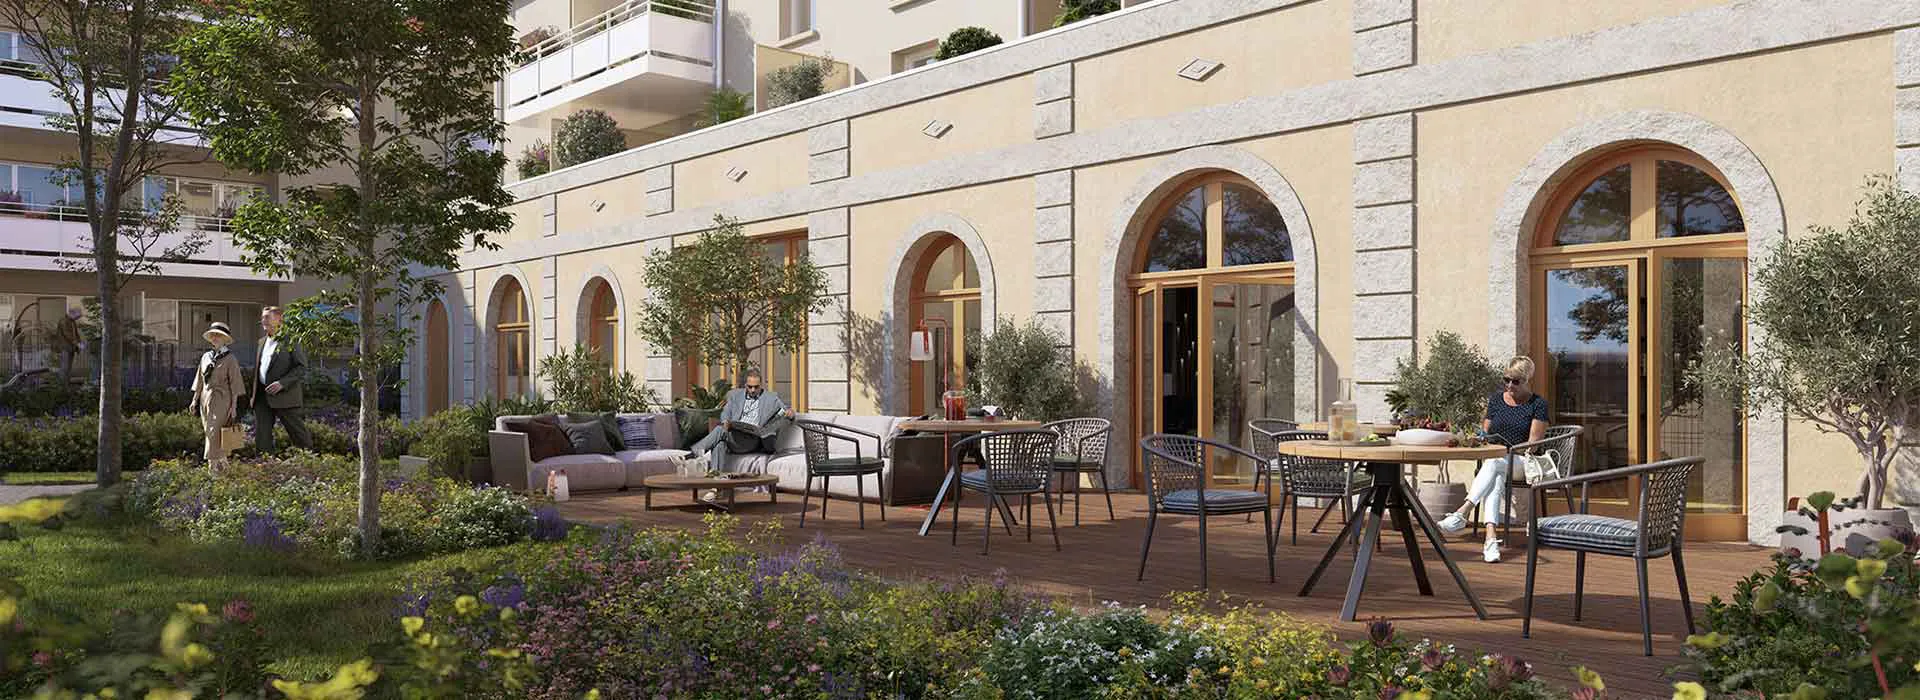 3D de la terrasse partagée de la résidence Serenly à Biard